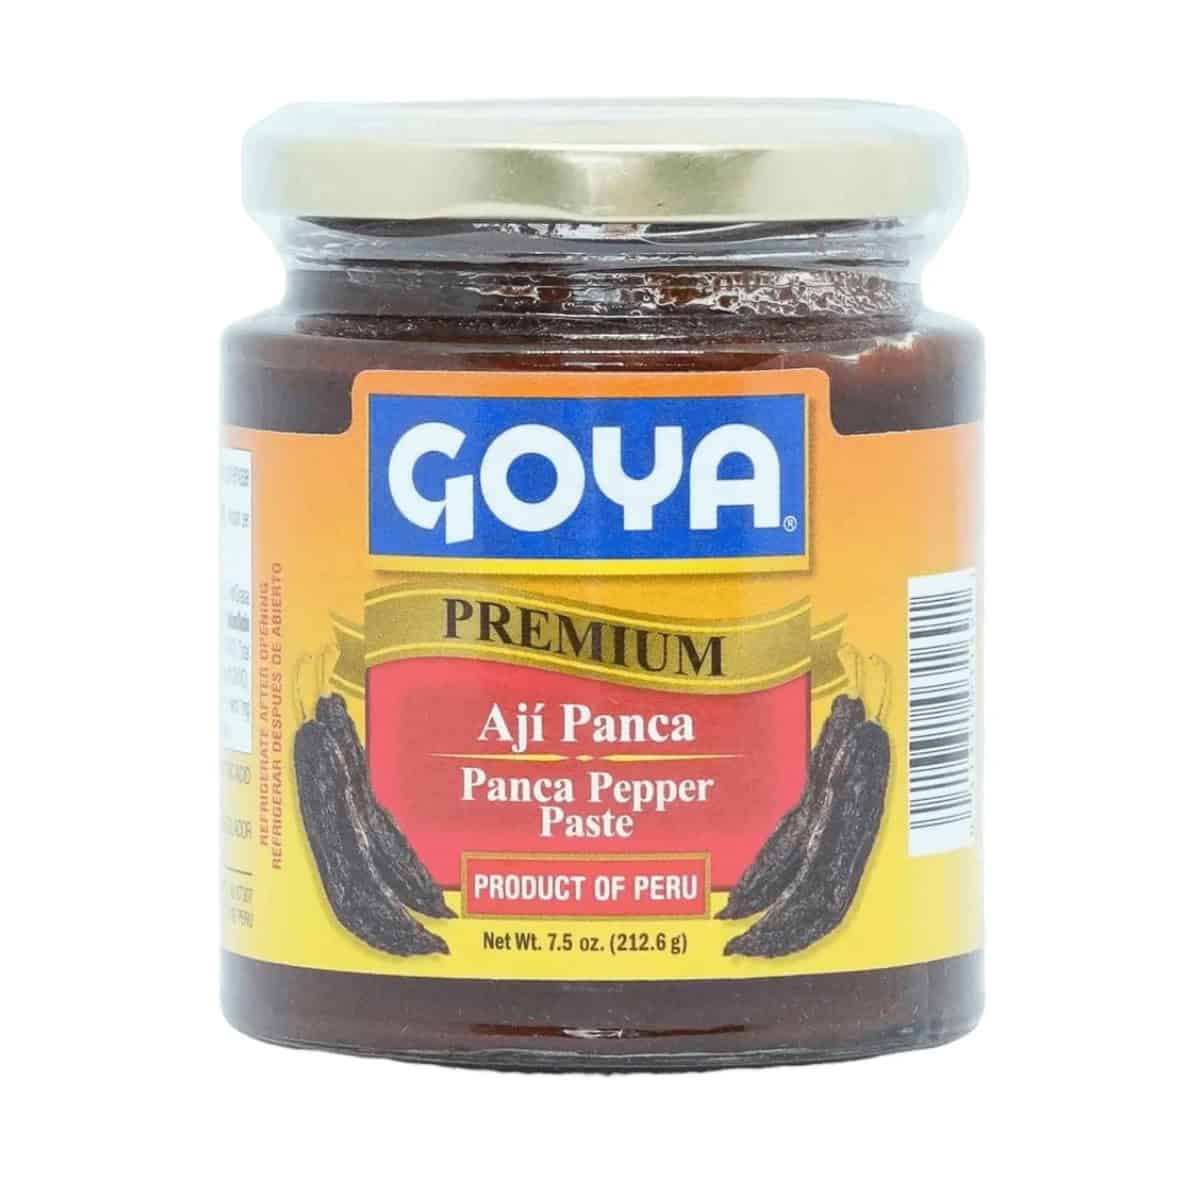 Buy Goya Aji Panca (Panca Pepper Paste) - 212.6 gm